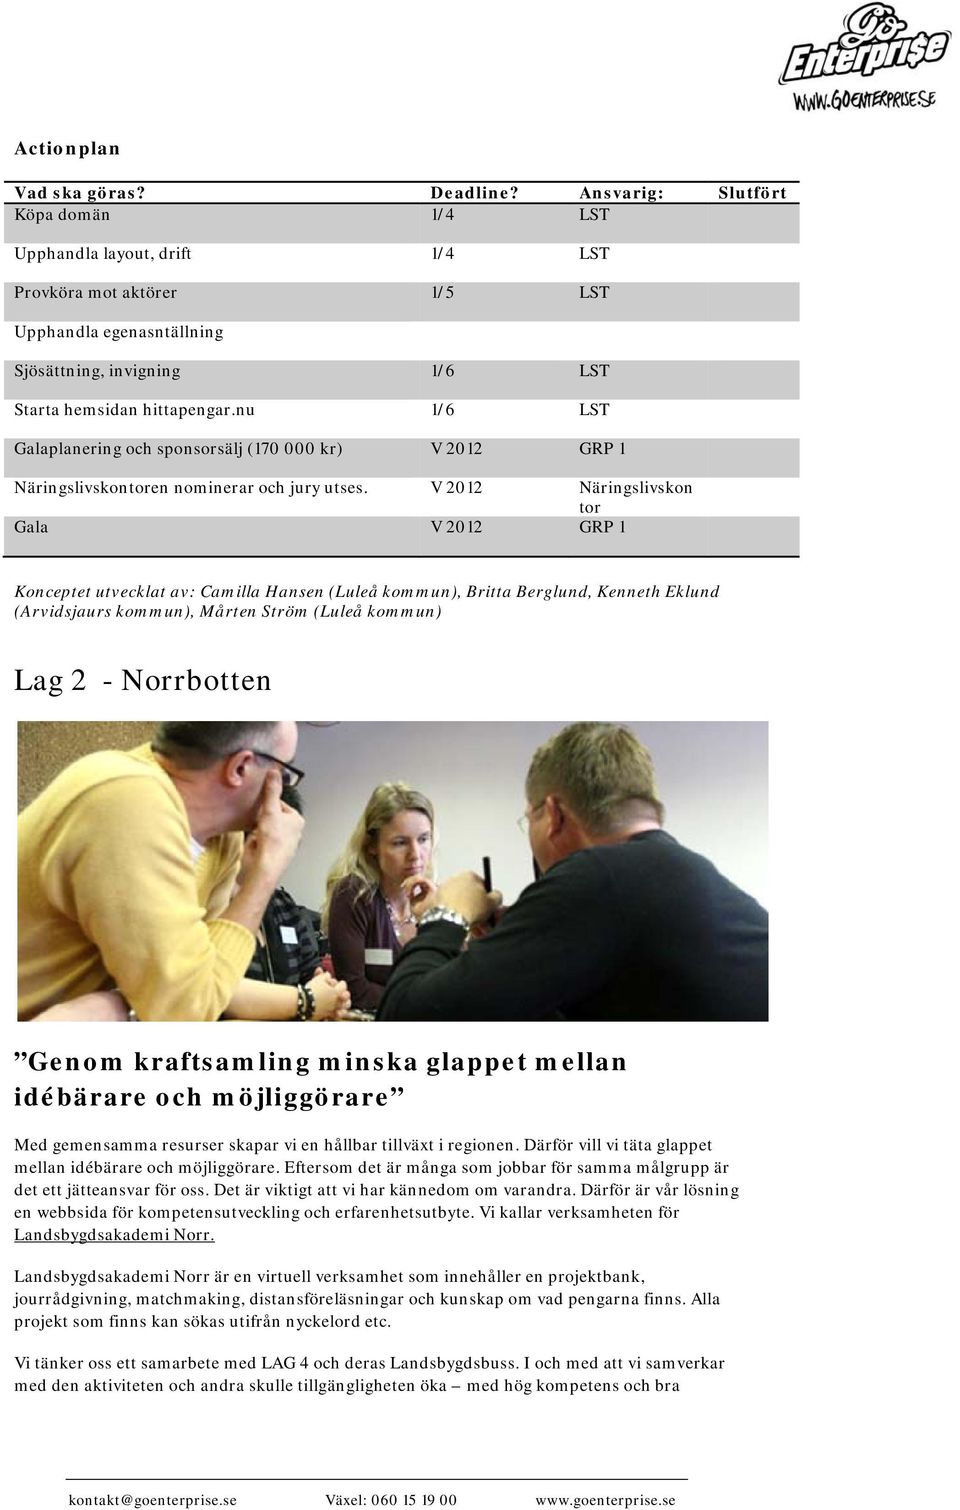 V 2012 Näringslivskon tor Gala V 2012 GRP 1 Konceptet utvecklat av: Camilla Hansen (Luleå kommun), Britta Berglund, Kenneth Eklund (Arvidsjaurs kommun), Mårten Ström (Luleå kommun) Lag 2 - Norrbotten